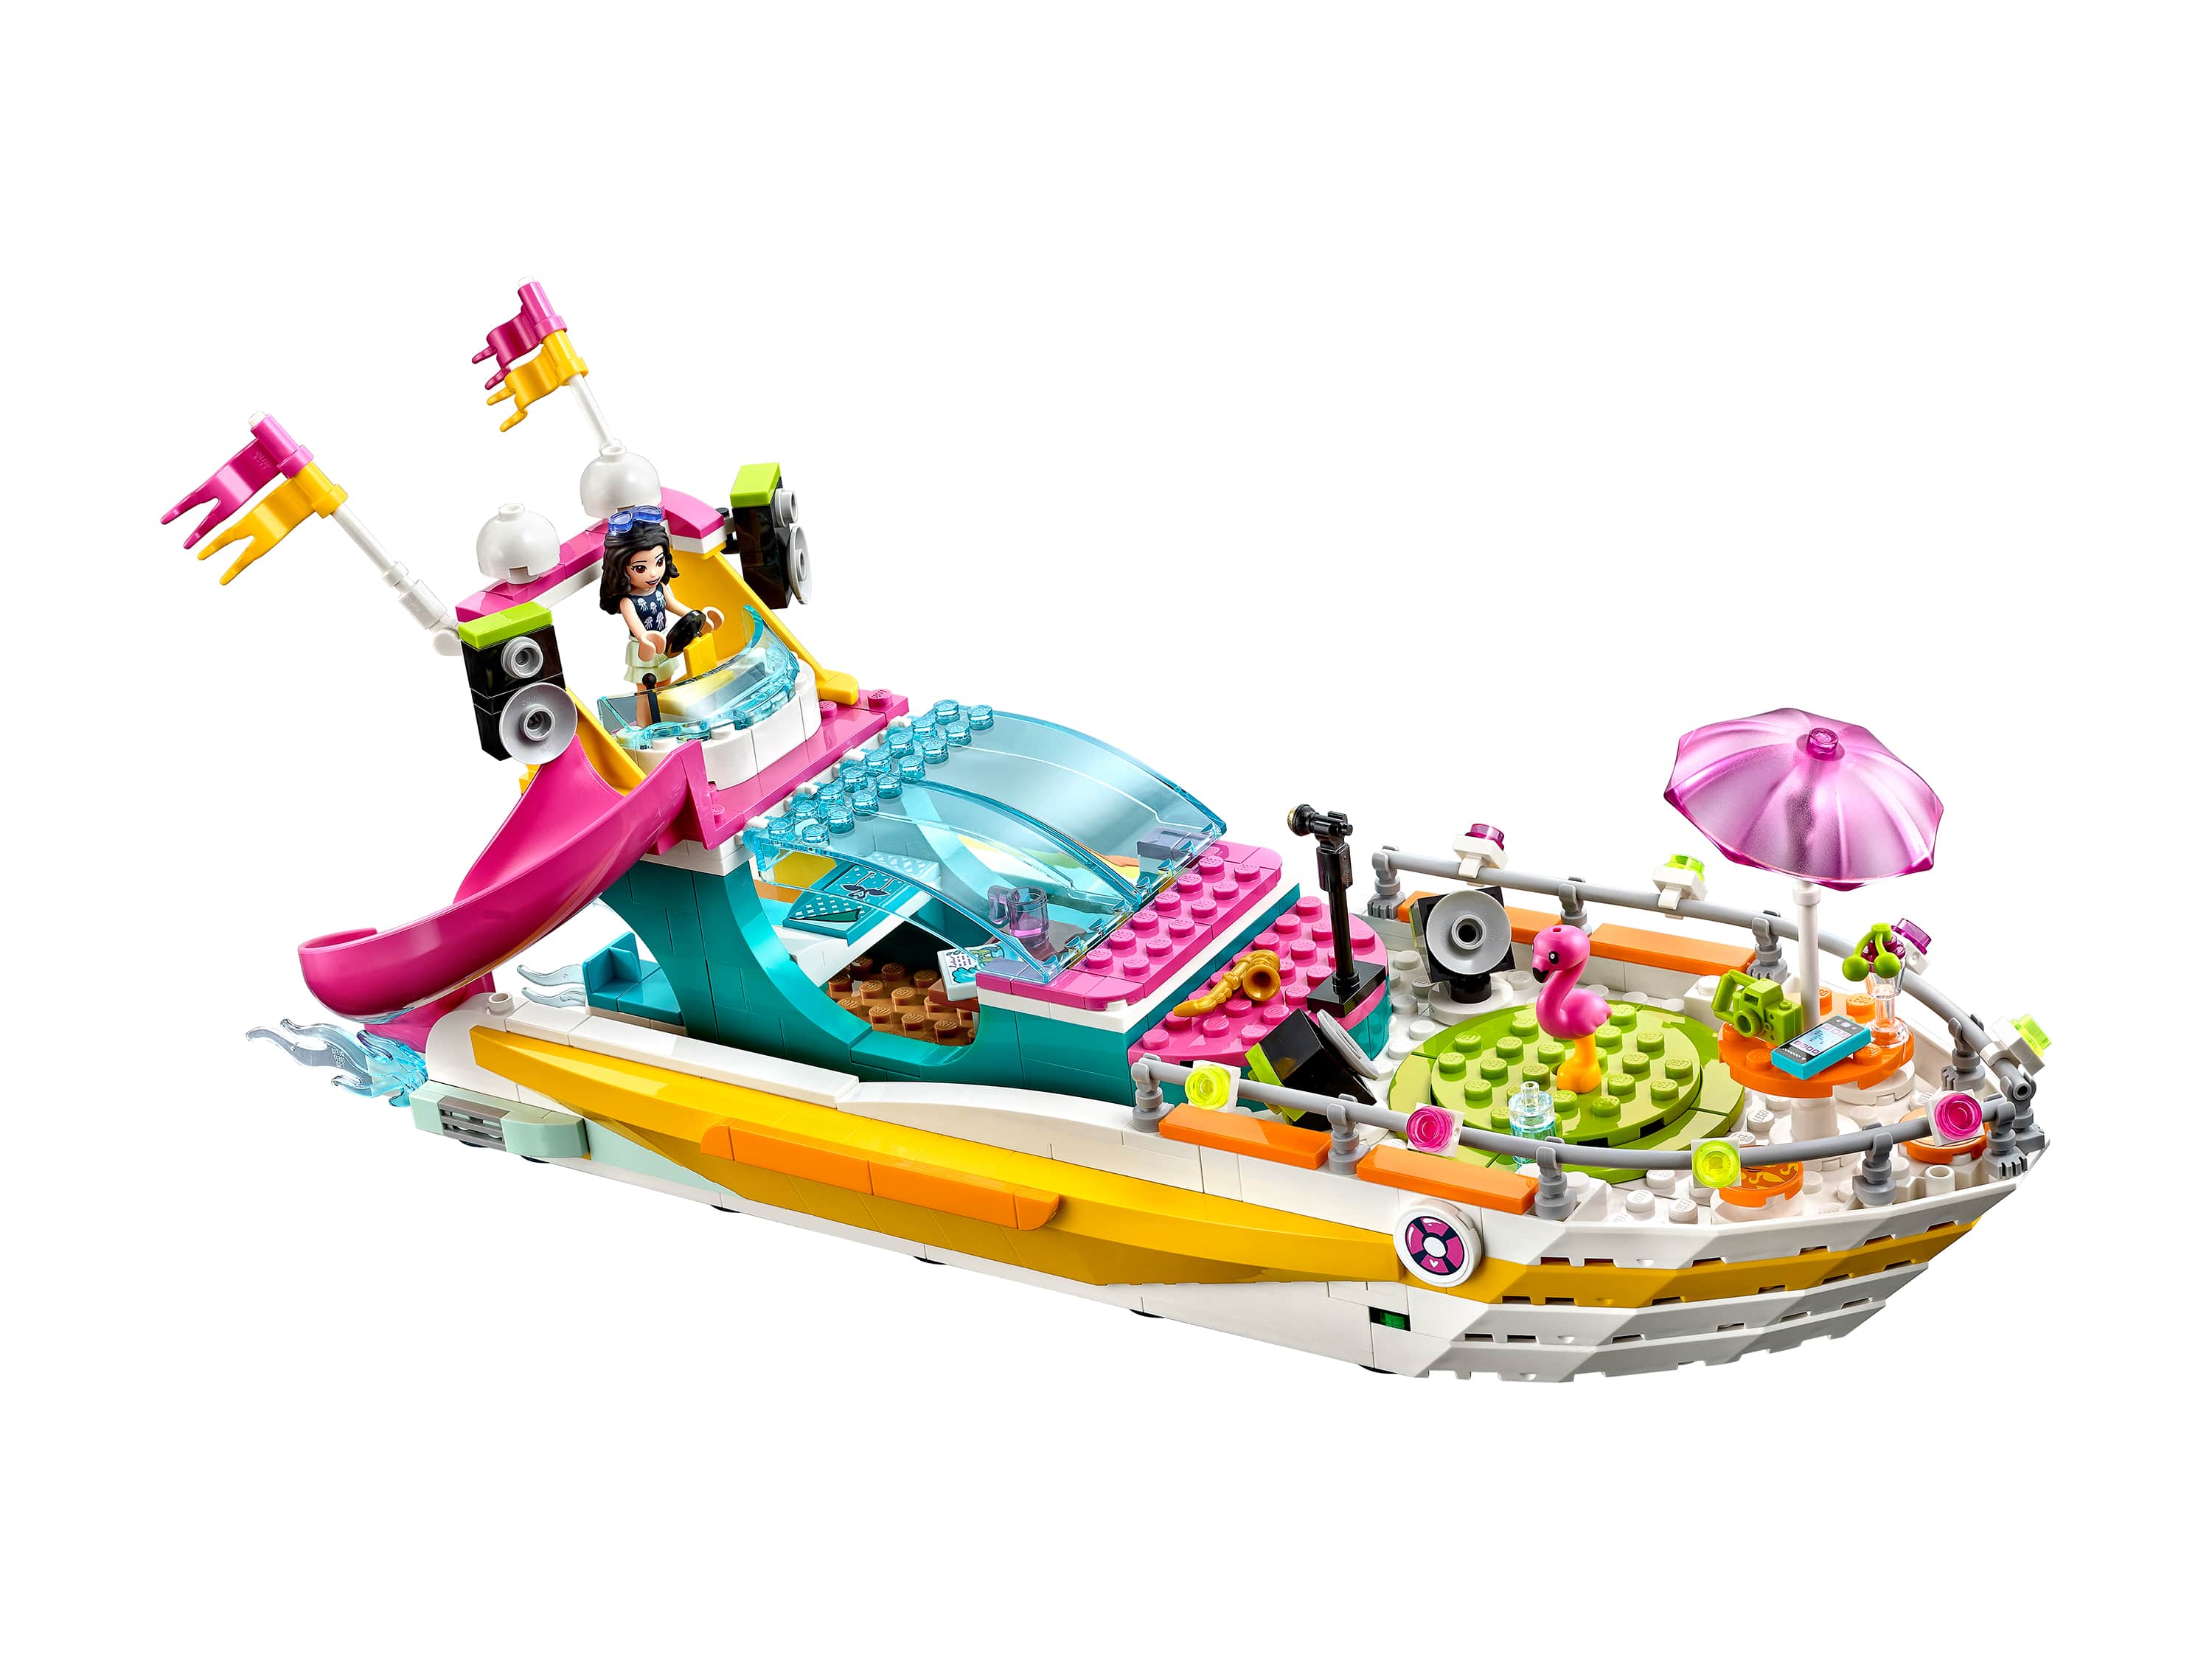 Конструктор LEGO Friends 41433 Яхта для вечеринок